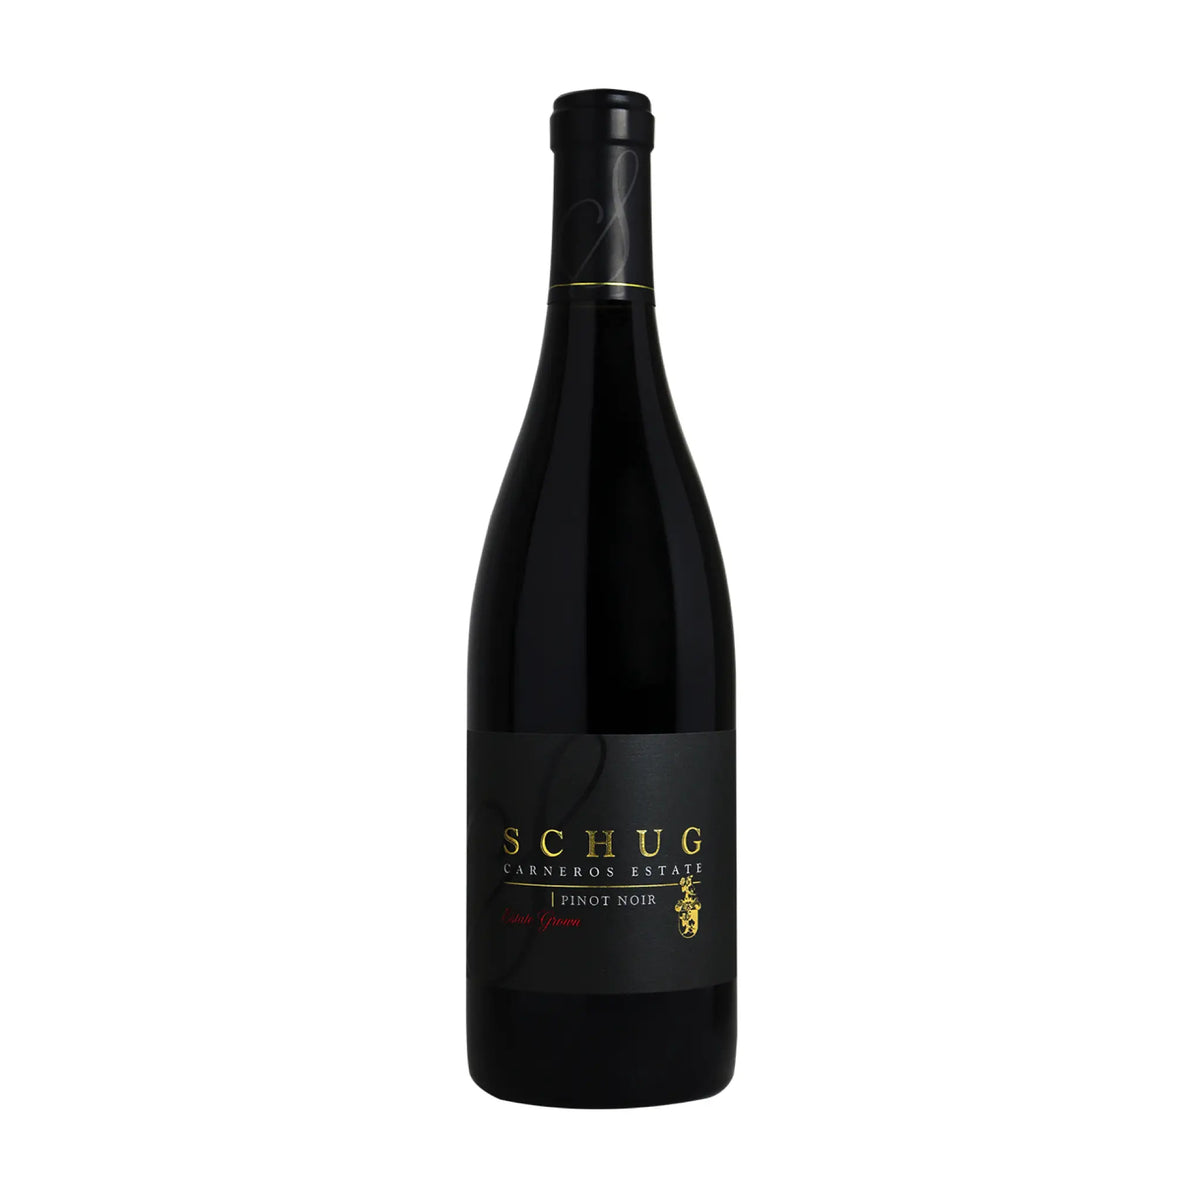 Schug Winery-Rotwein-Pinot Noir-USA-Kalifornien-2018 Pinot Noir "Estate Grown" Carneros-WINECOM